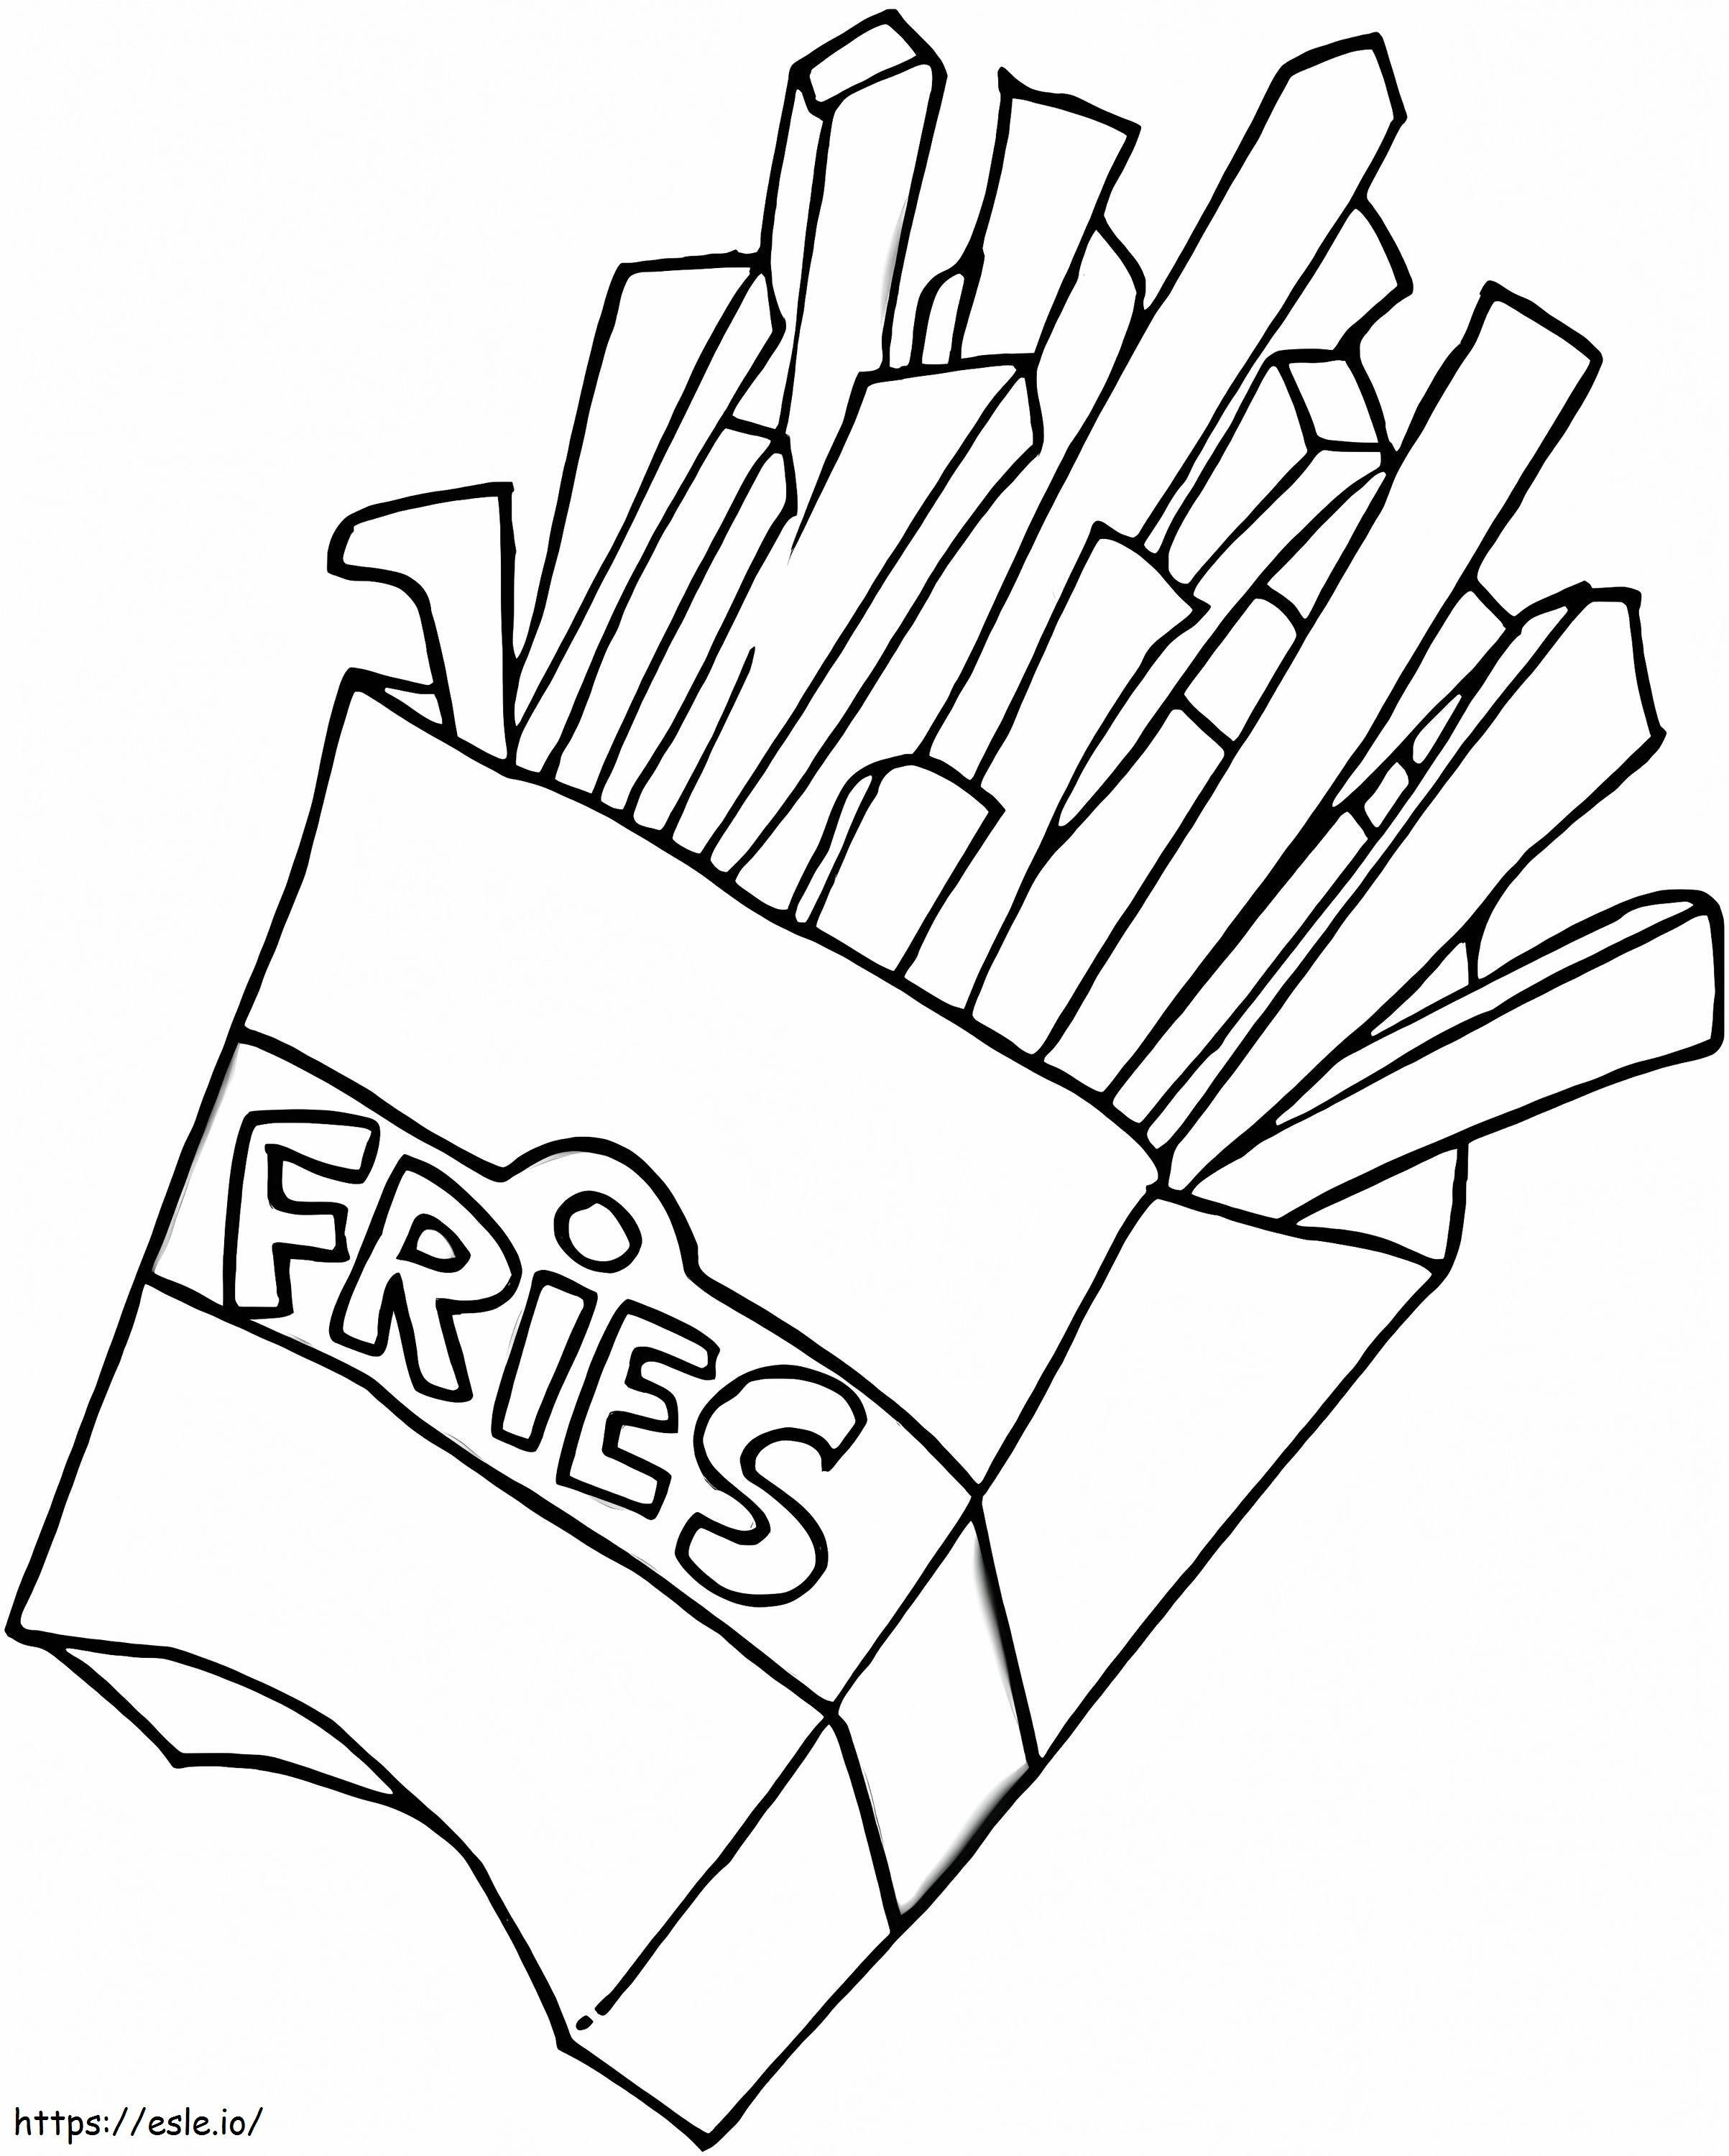 Patatine fritte gratis da colorare